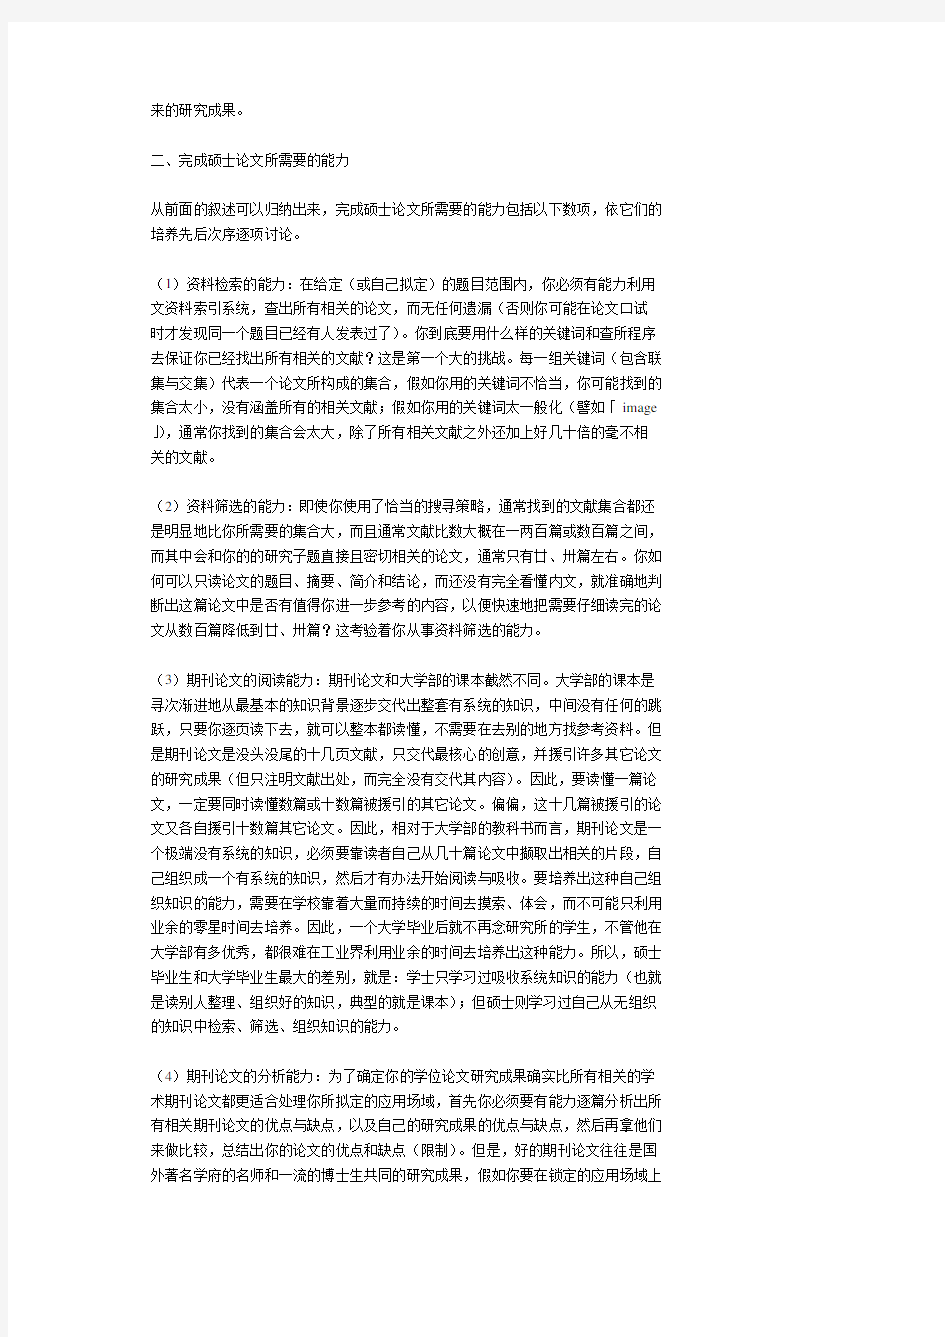 台湾清华彭明辉教授的研究生手册(简体简化版)